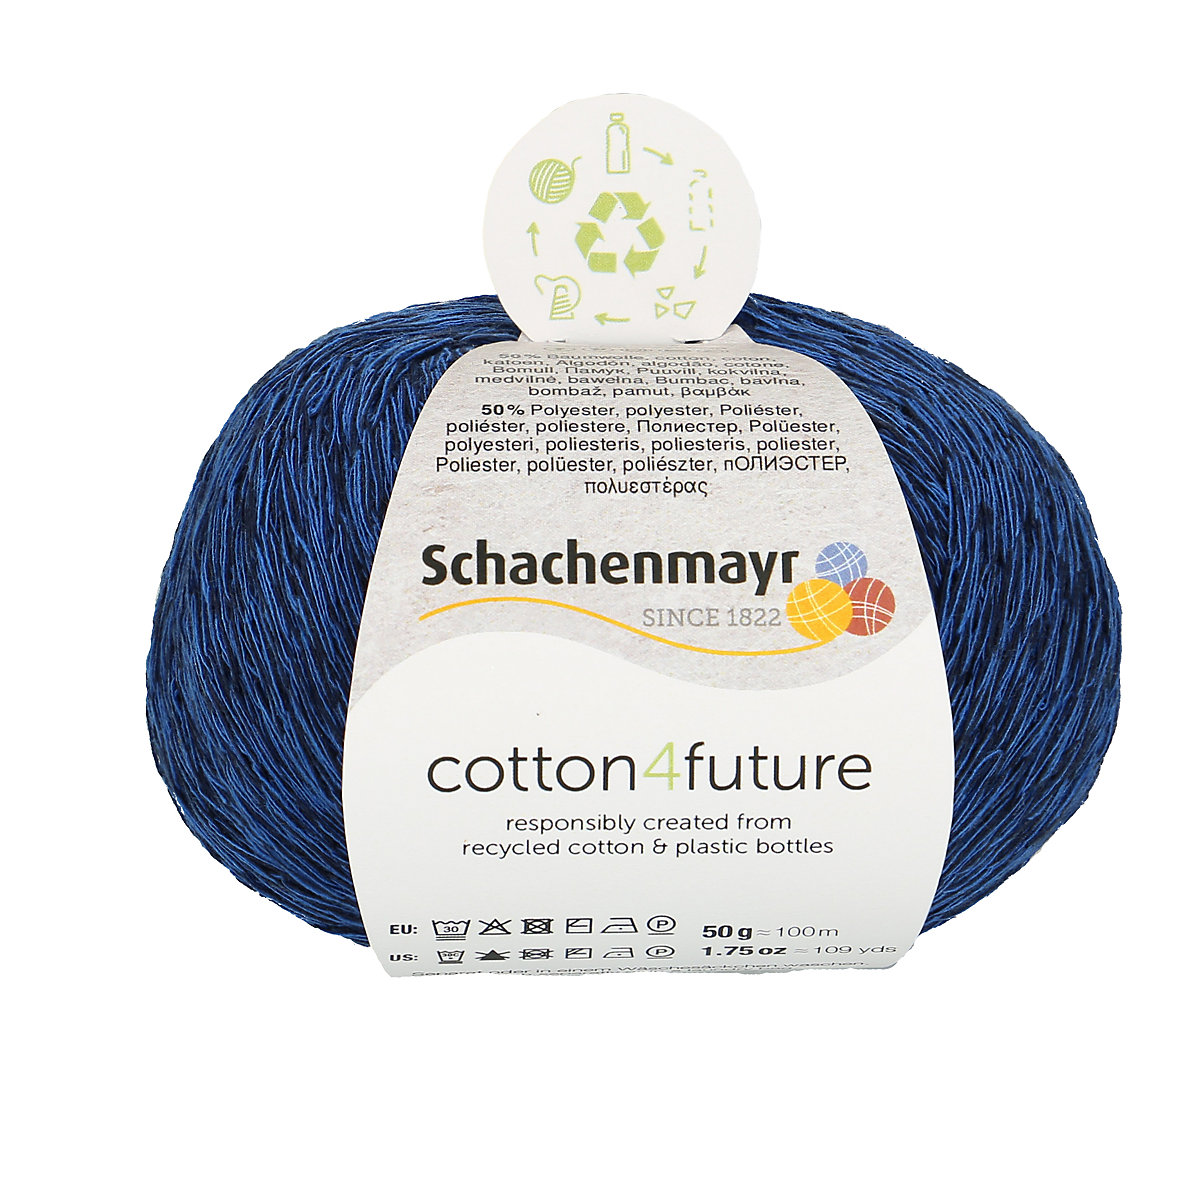 Schachenmayr Handstrickgarne cotton4future 50g Ocean